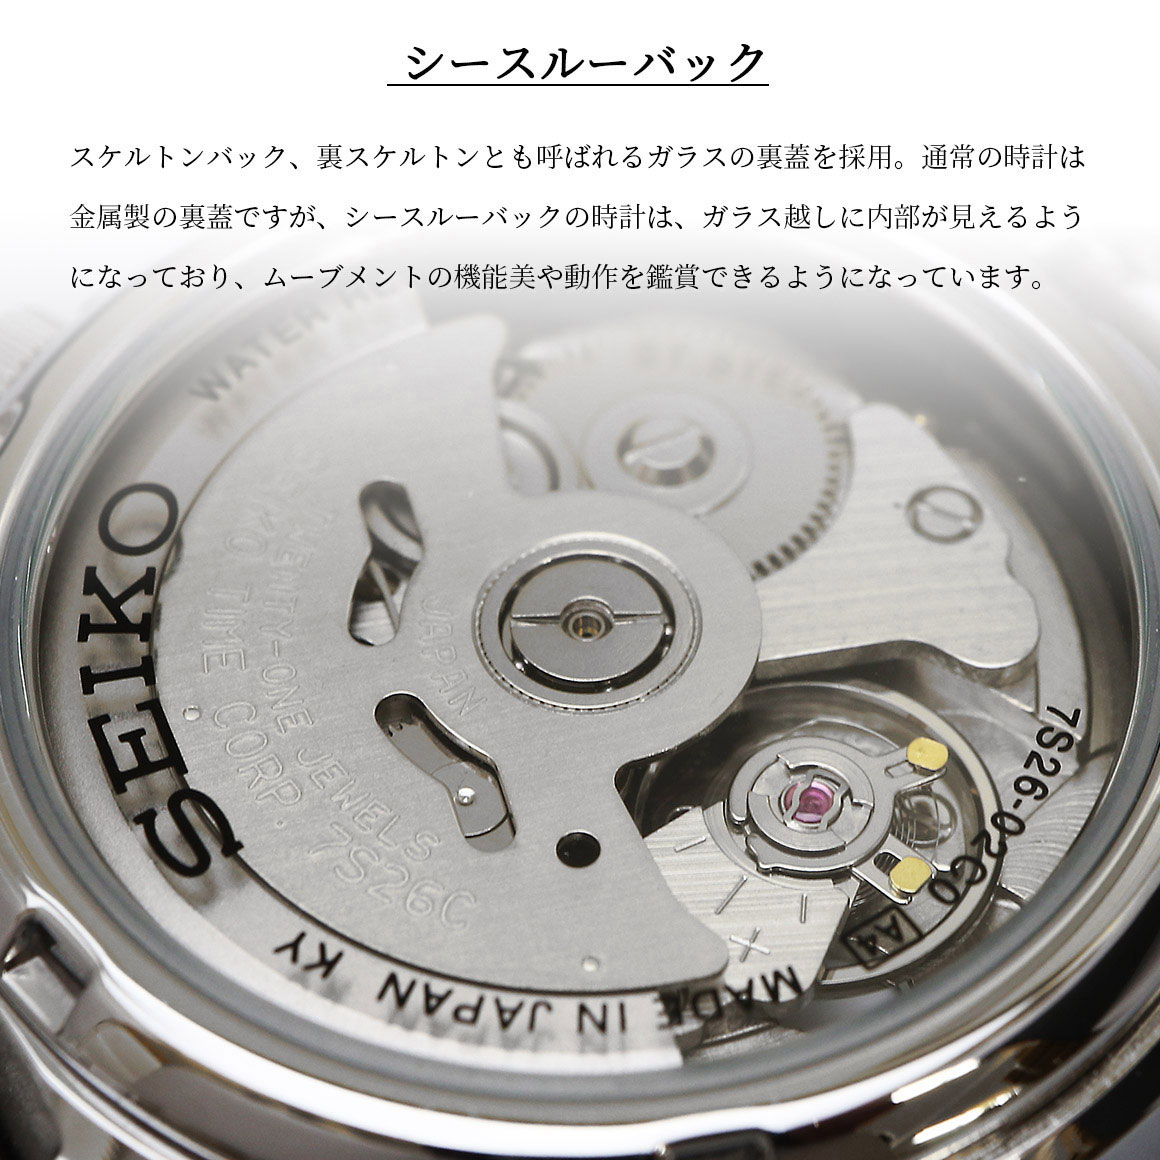 SEIKO セイコー 腕時計 メンズ 海外モデル MADE IN JAPAN セイコー5